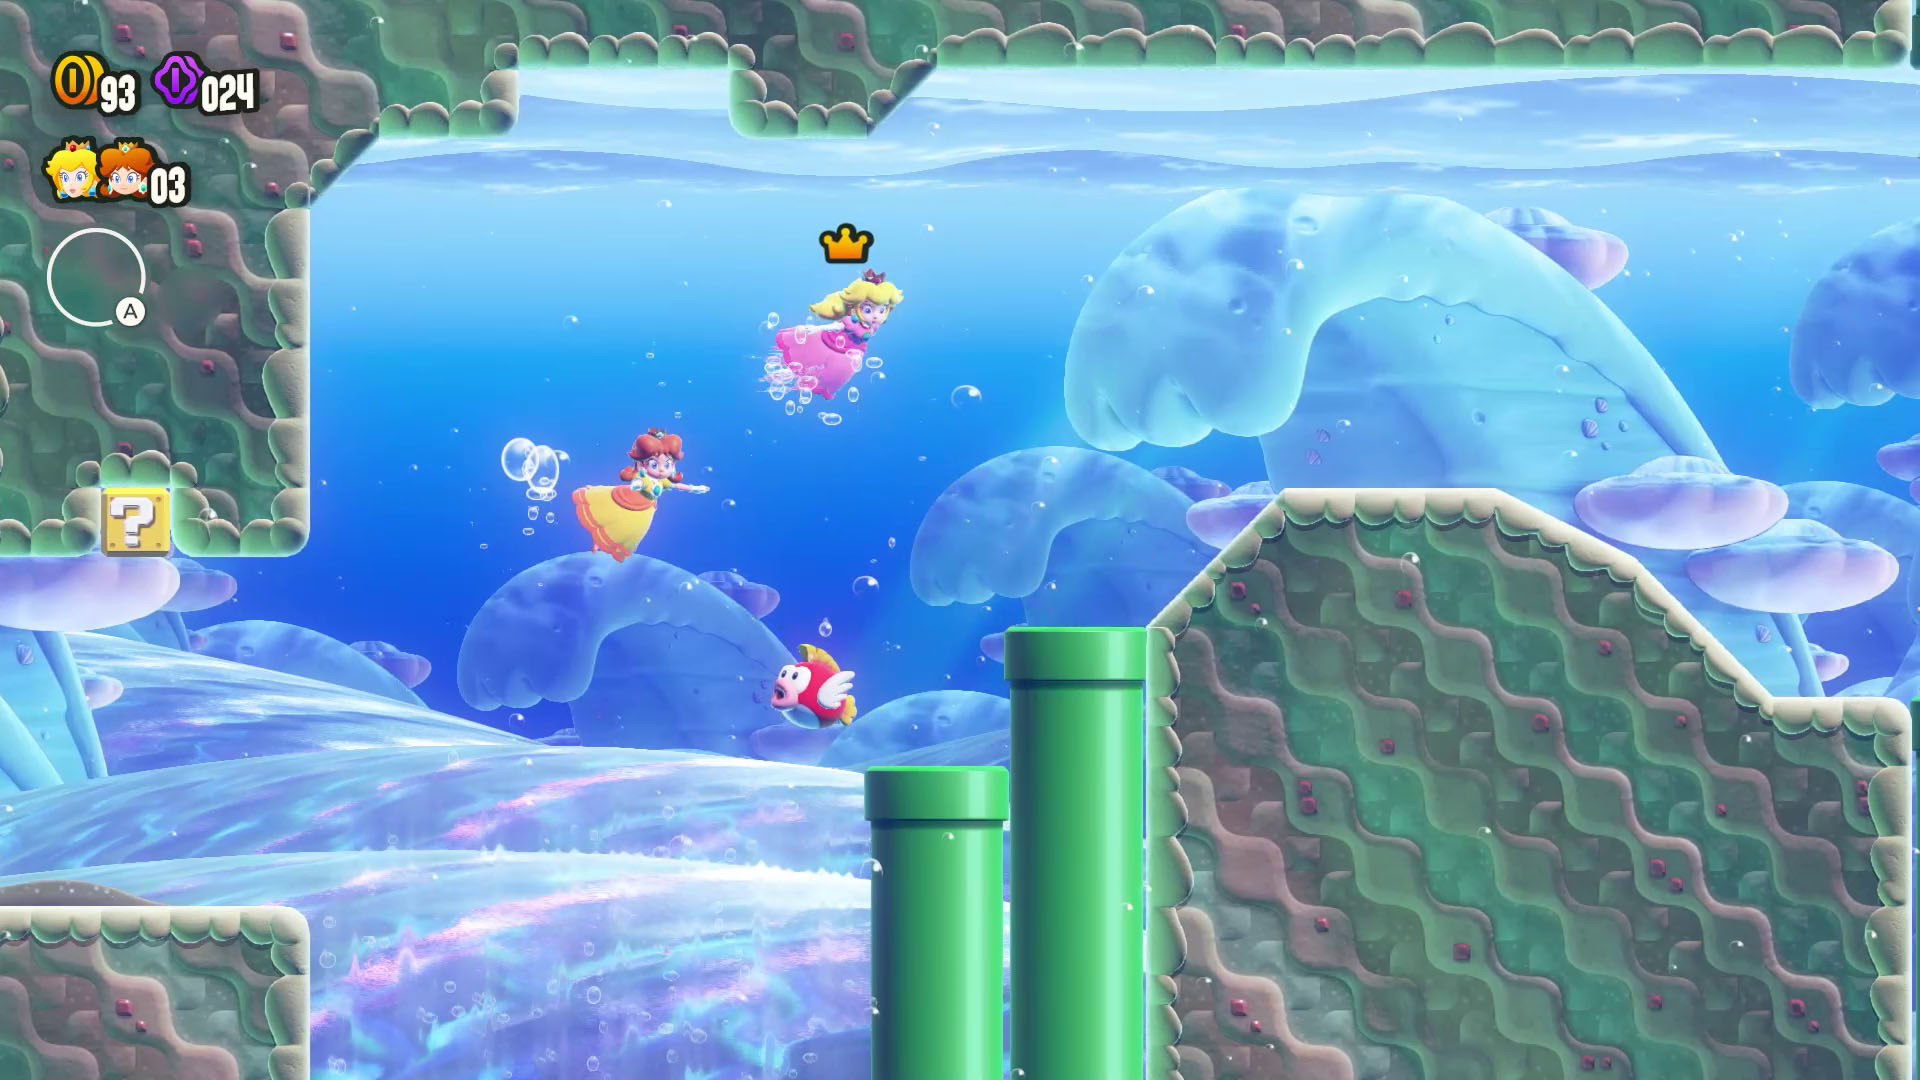 Super Mario Bros. Wonder : profitez de la sortie du nouveau jeu de